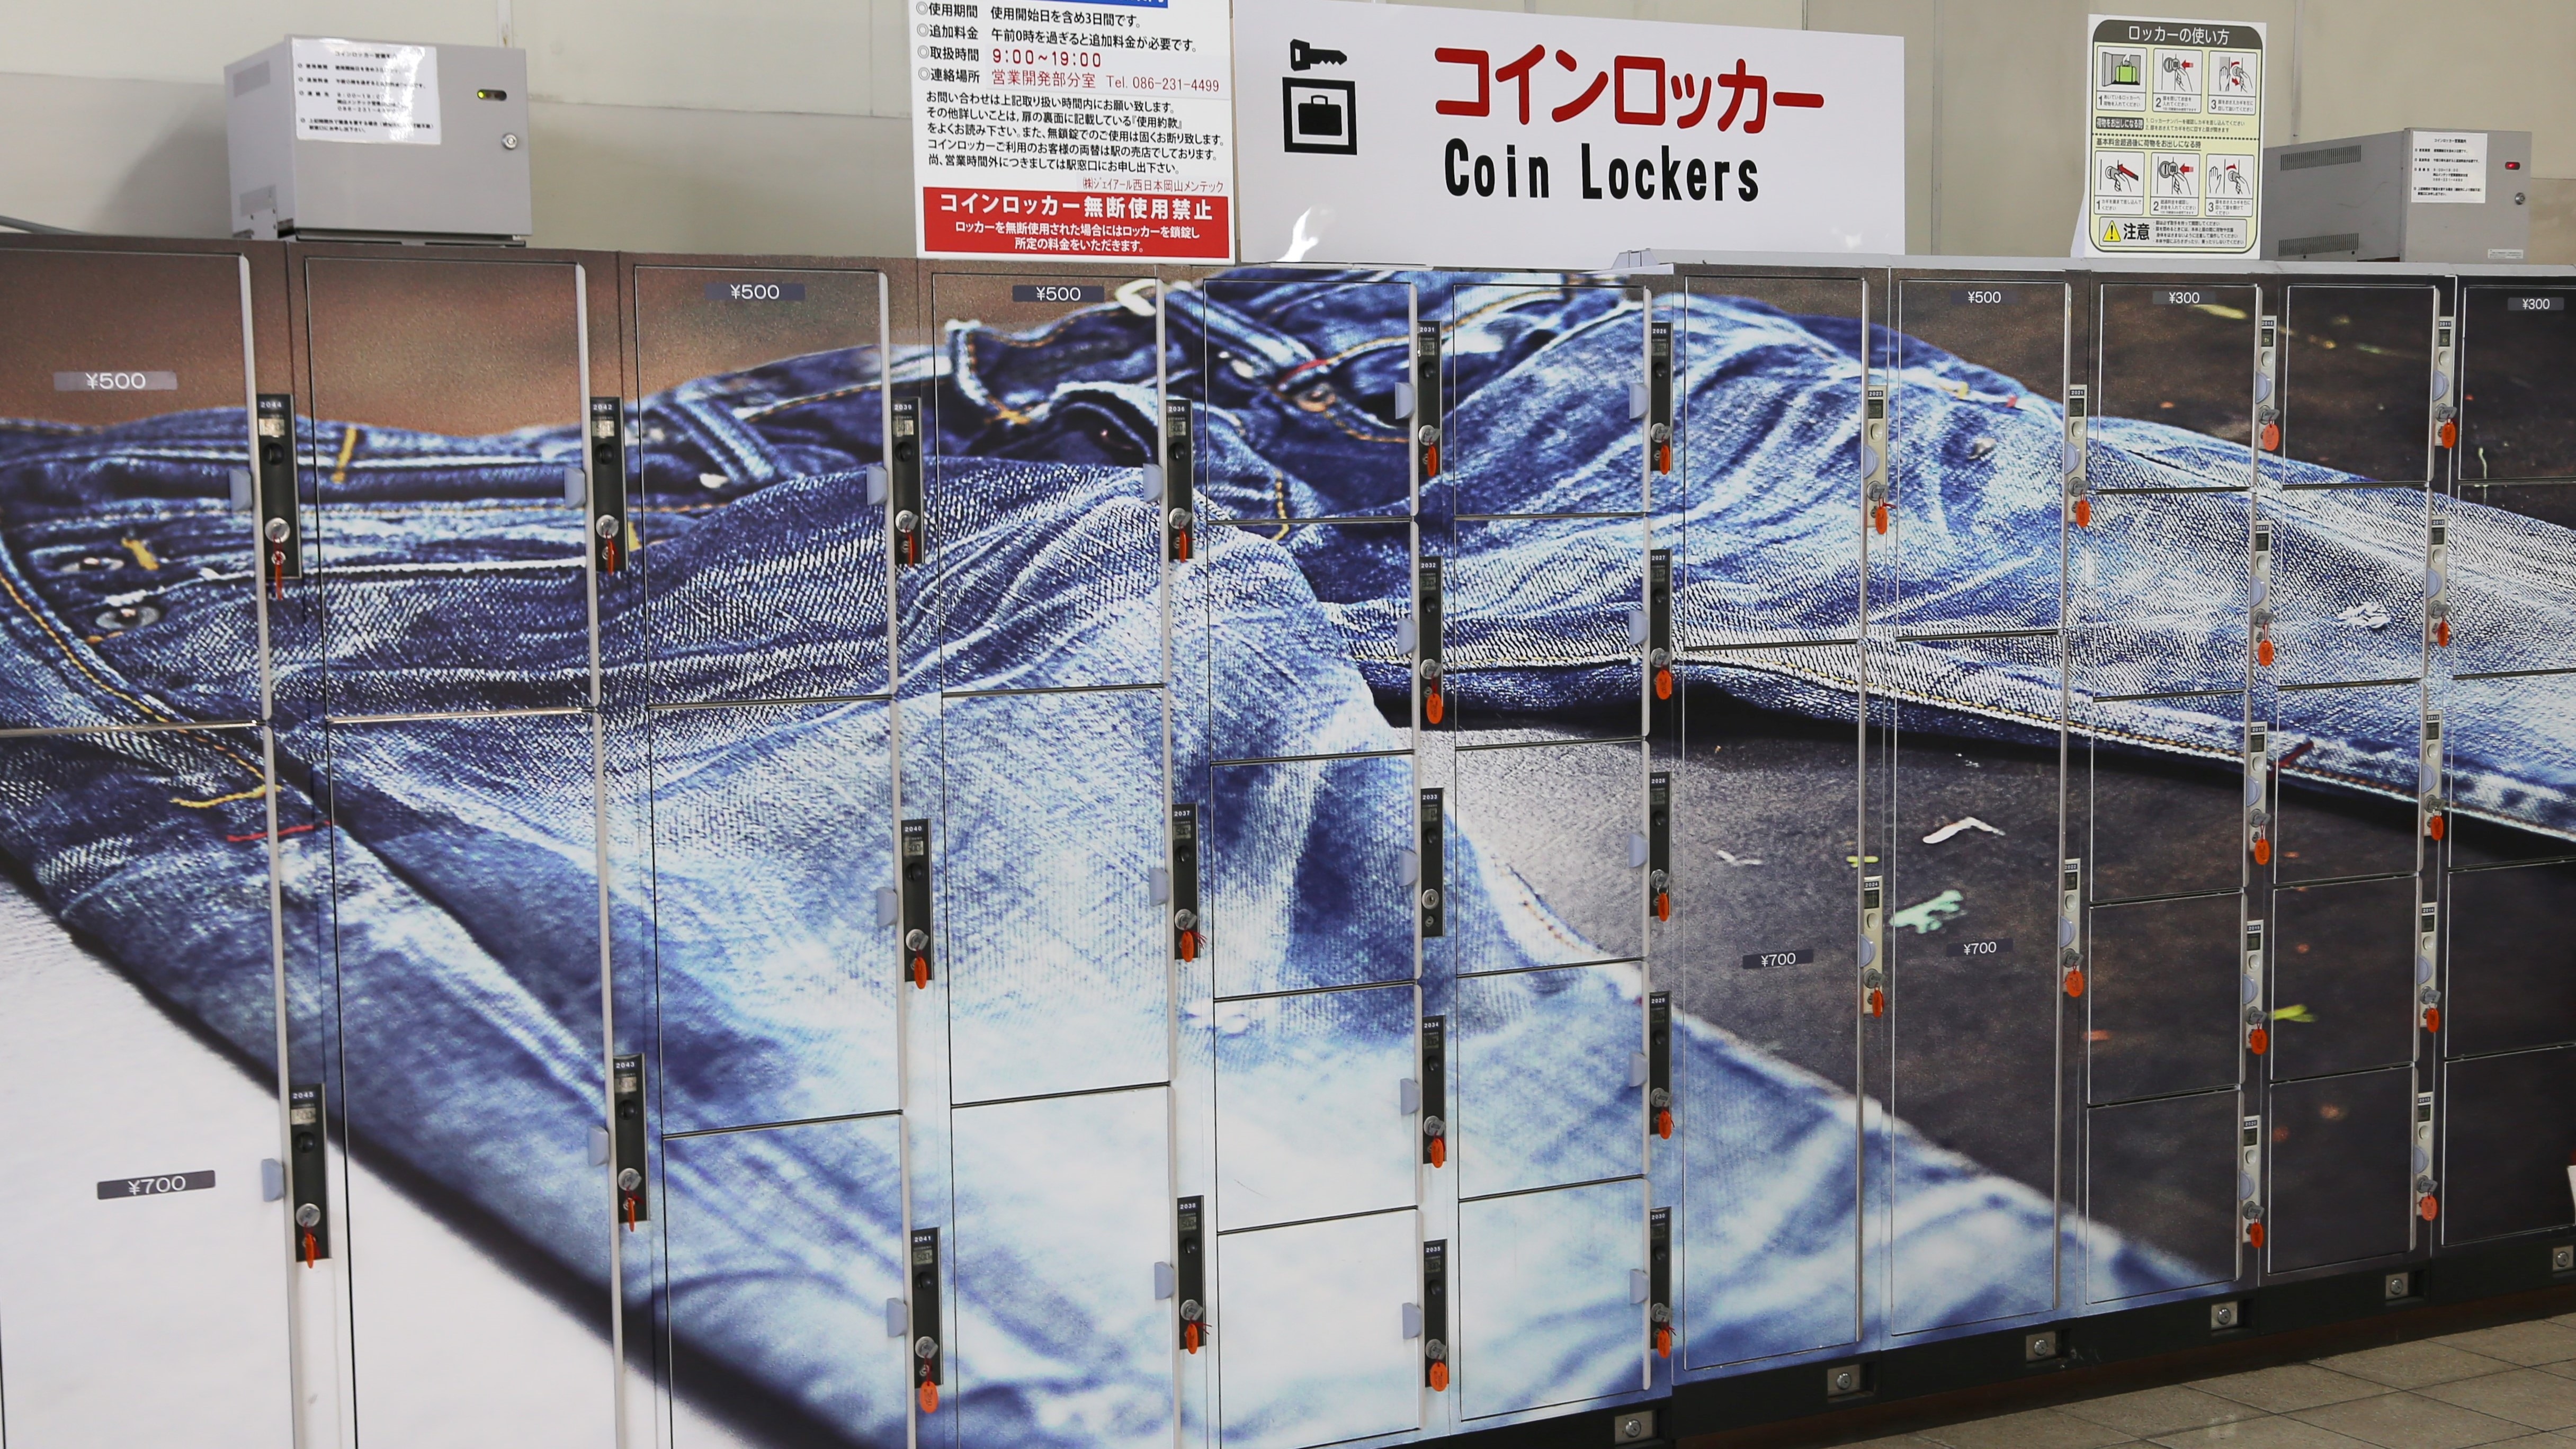 Kojima station locker